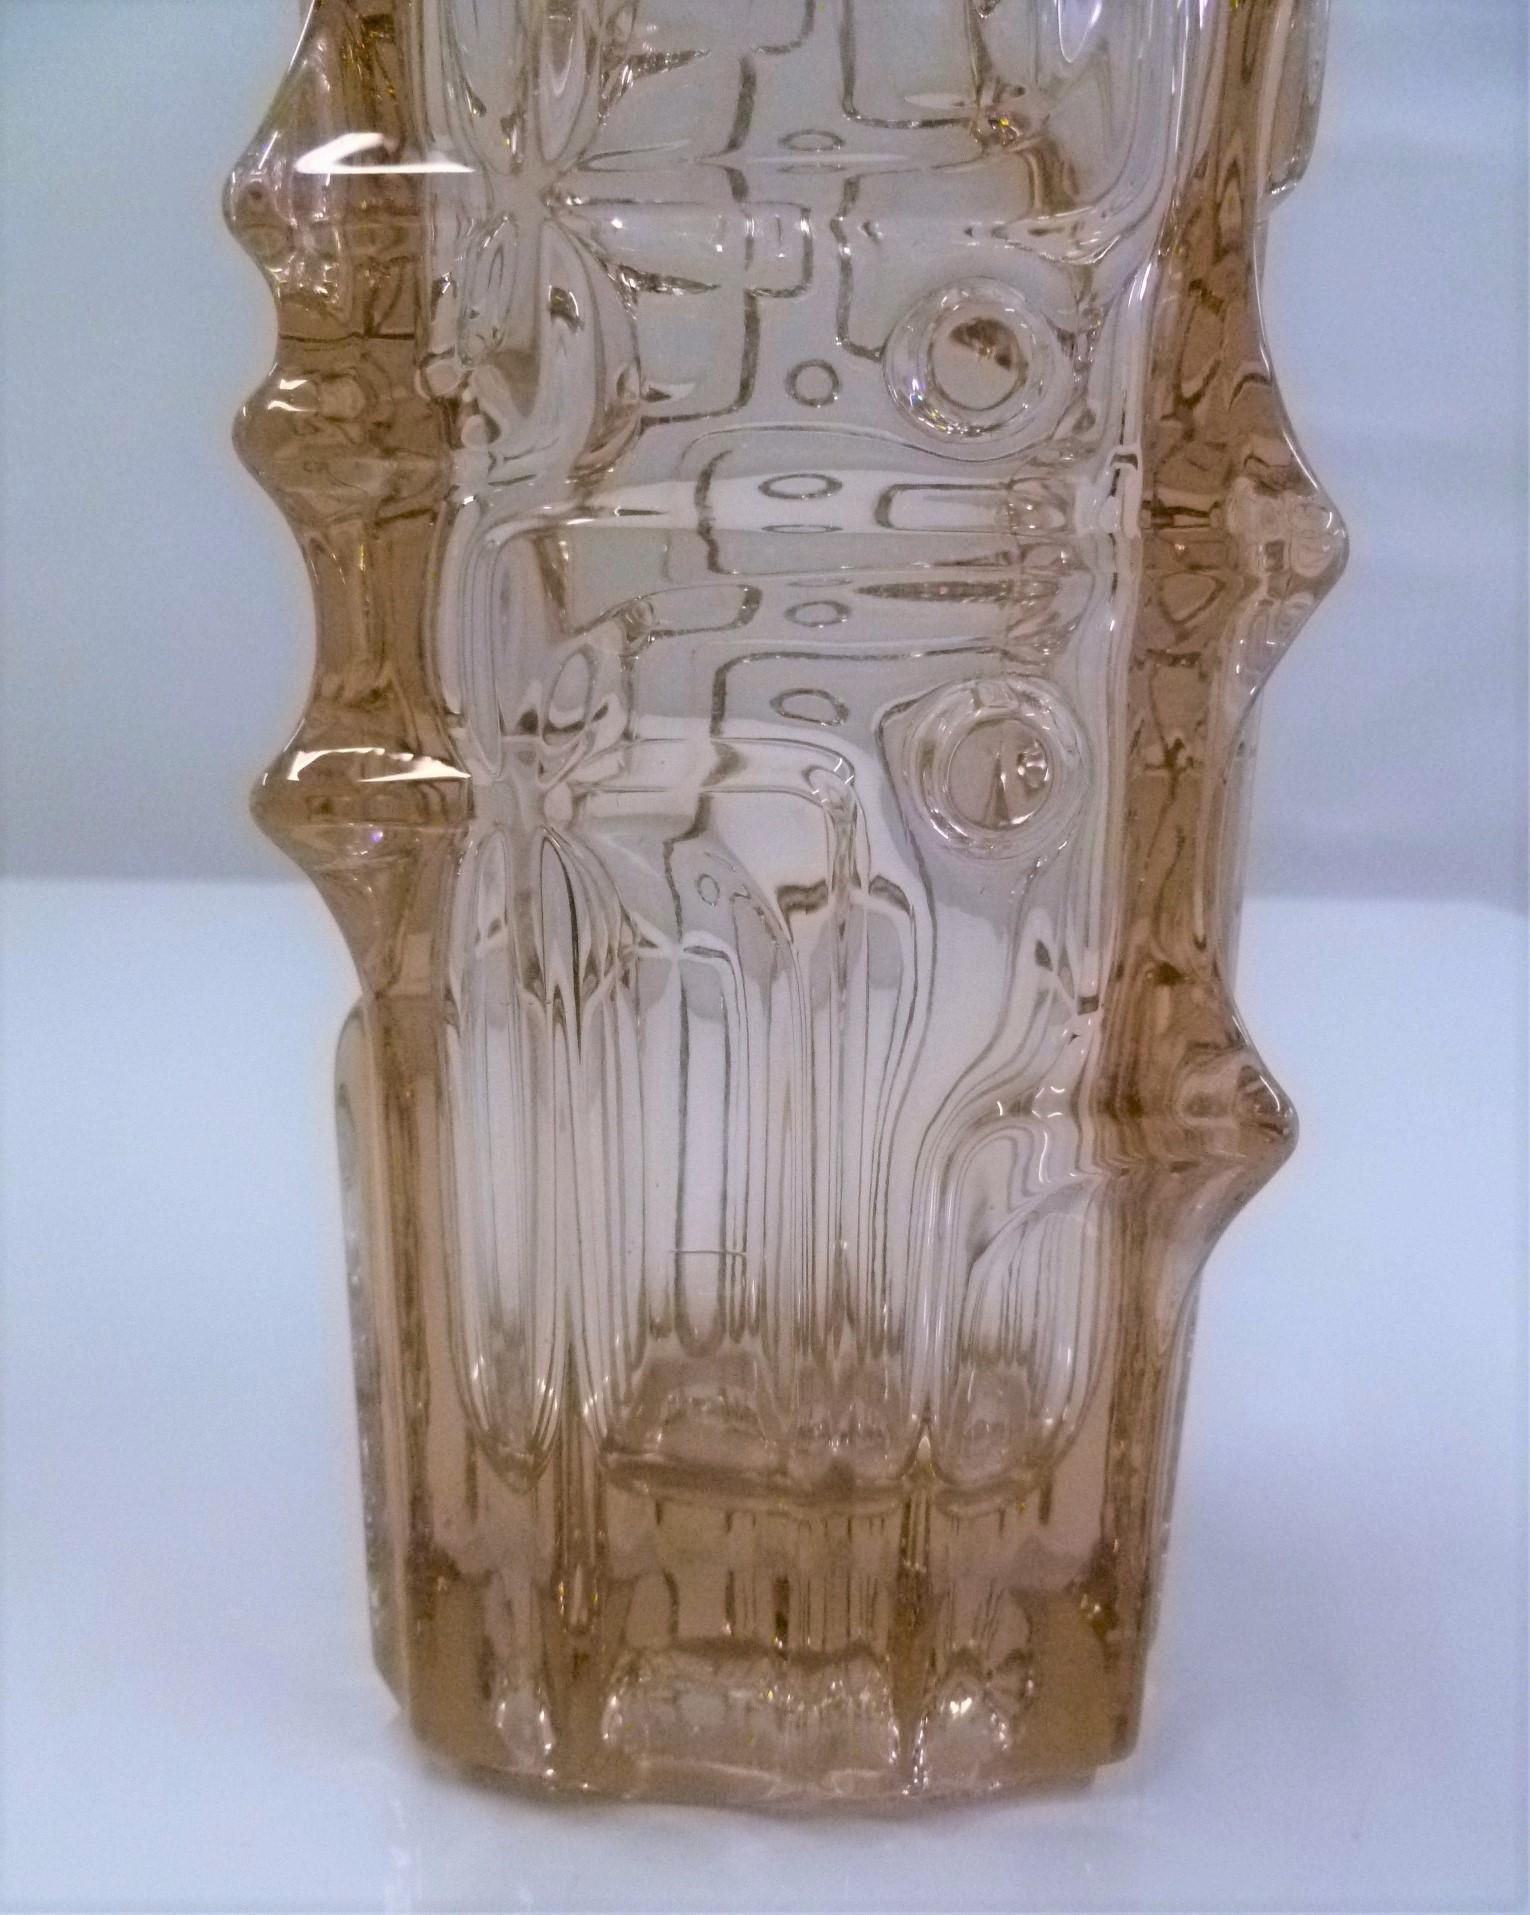 Pressed Modern Vladislav Urban Glass Vase, SKLO Rosice Glassworks Czechoslovakia, 1968